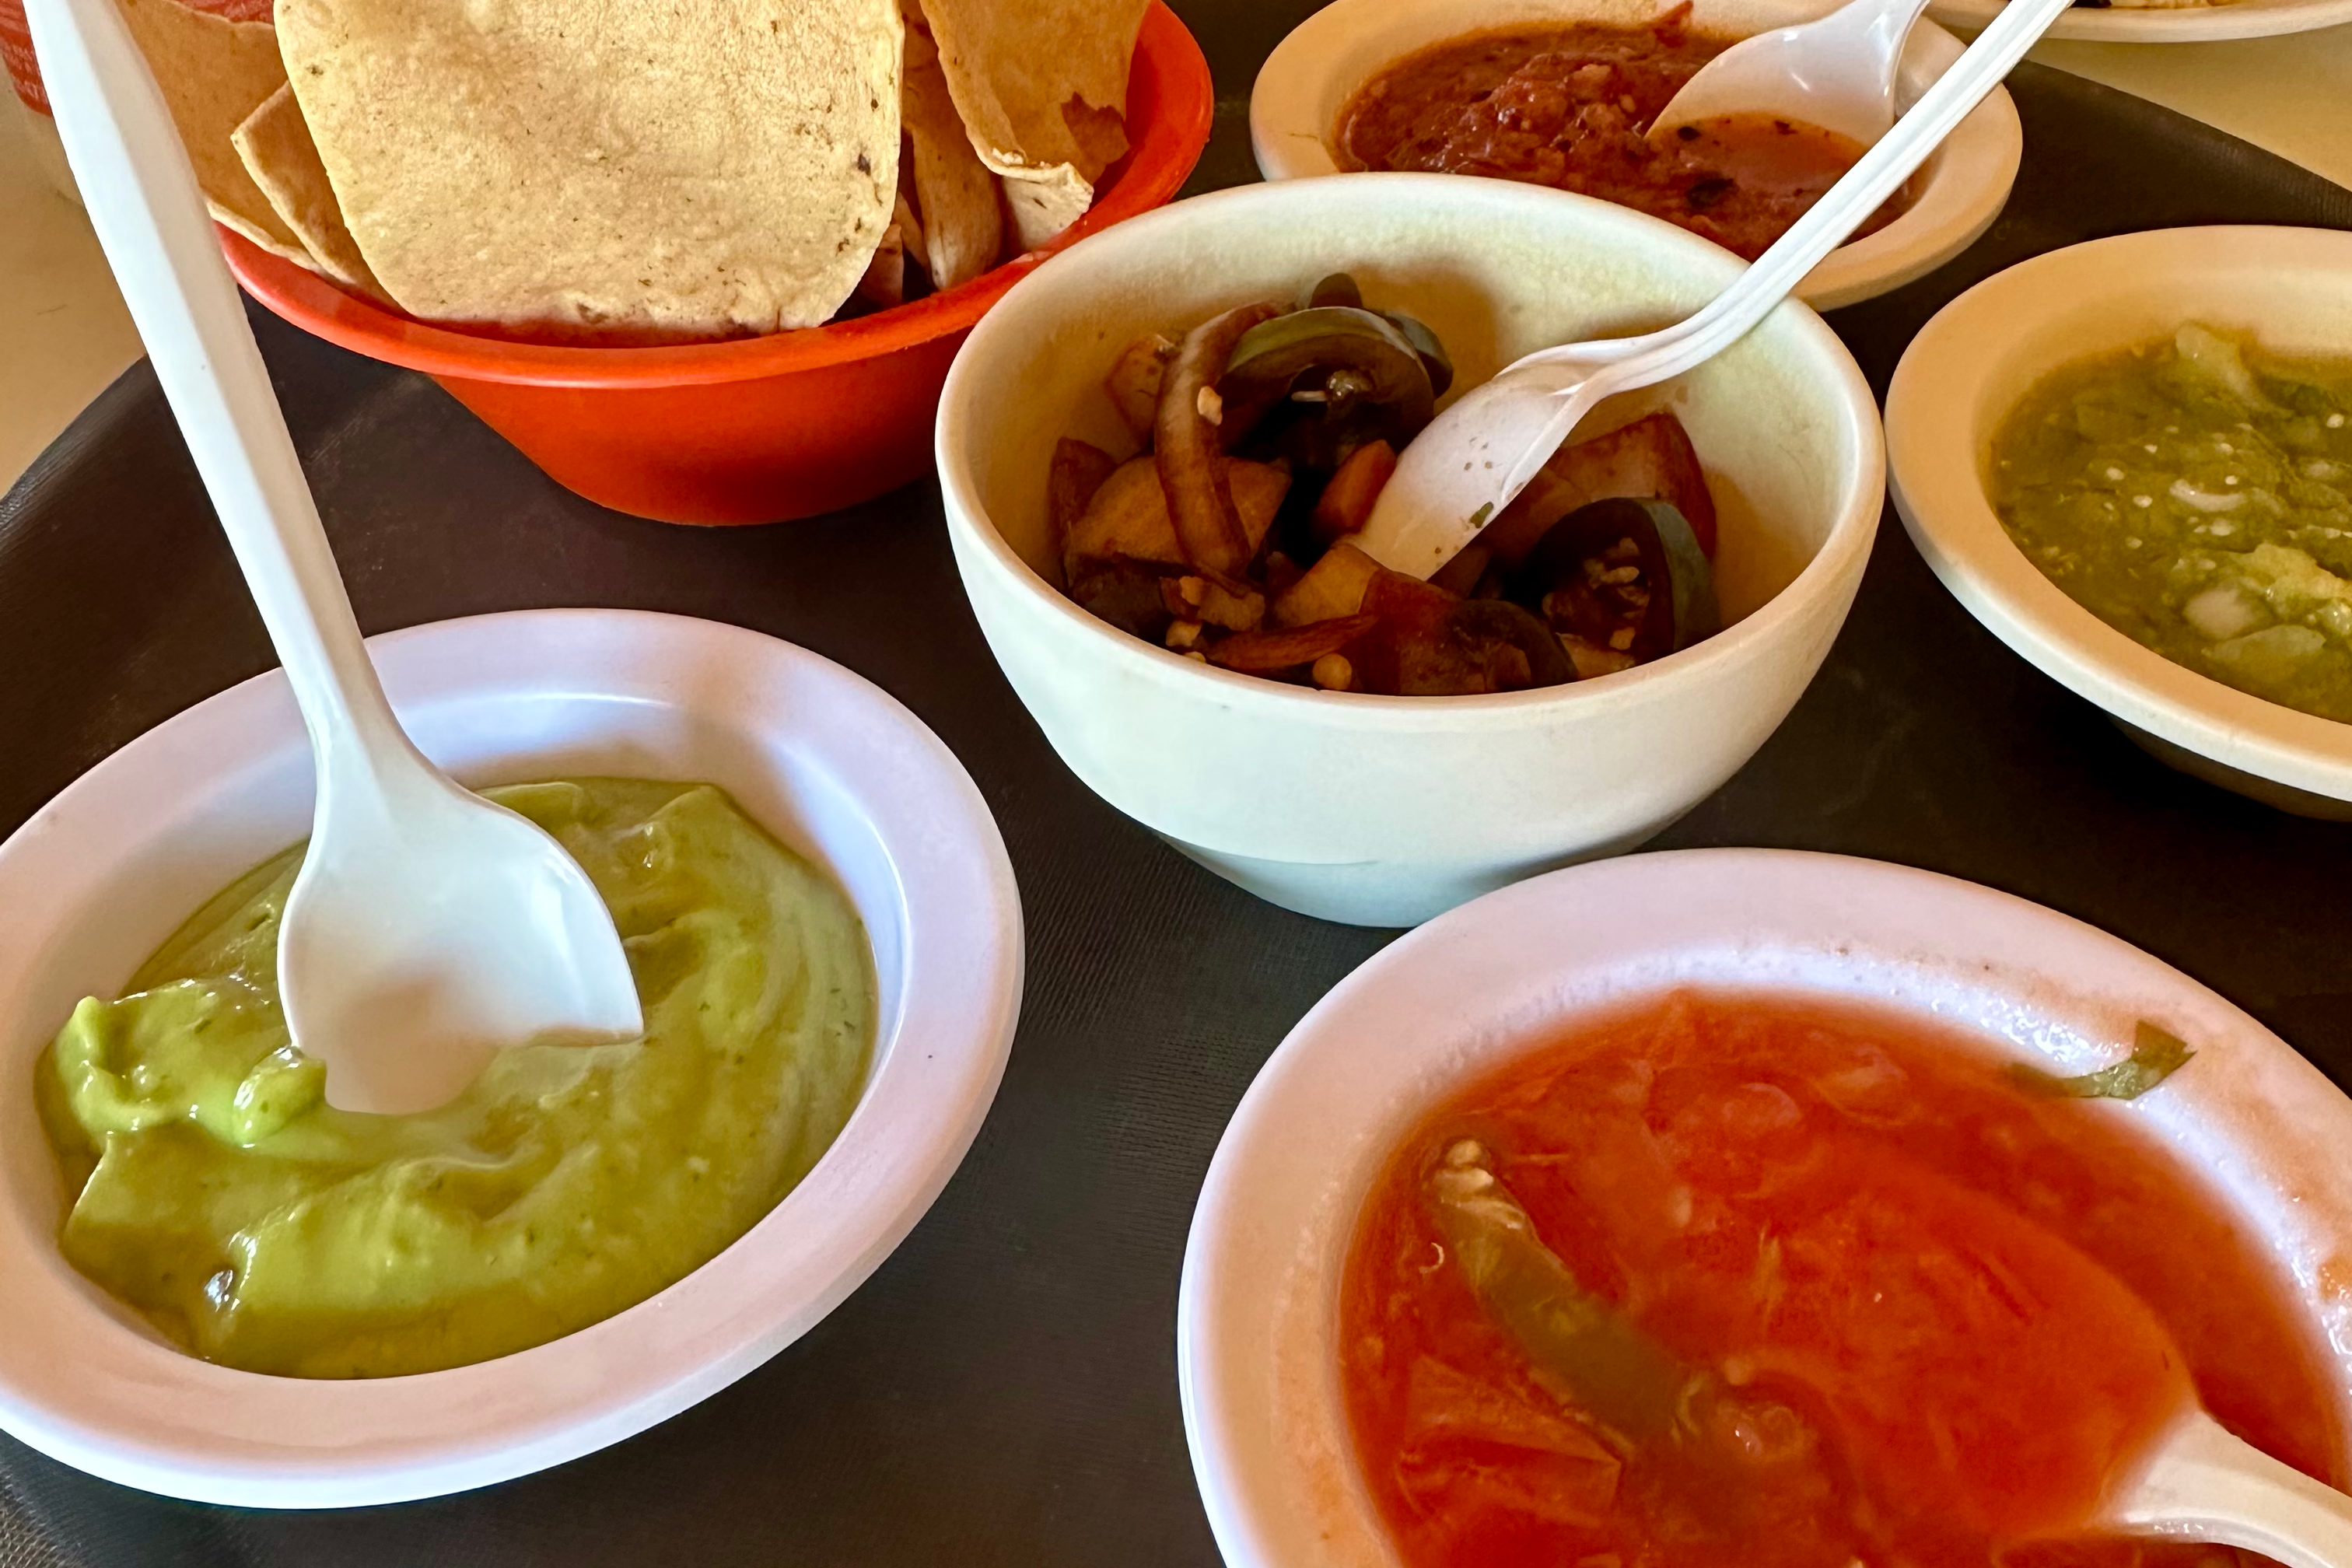 Each salsa at La Garita was homemade